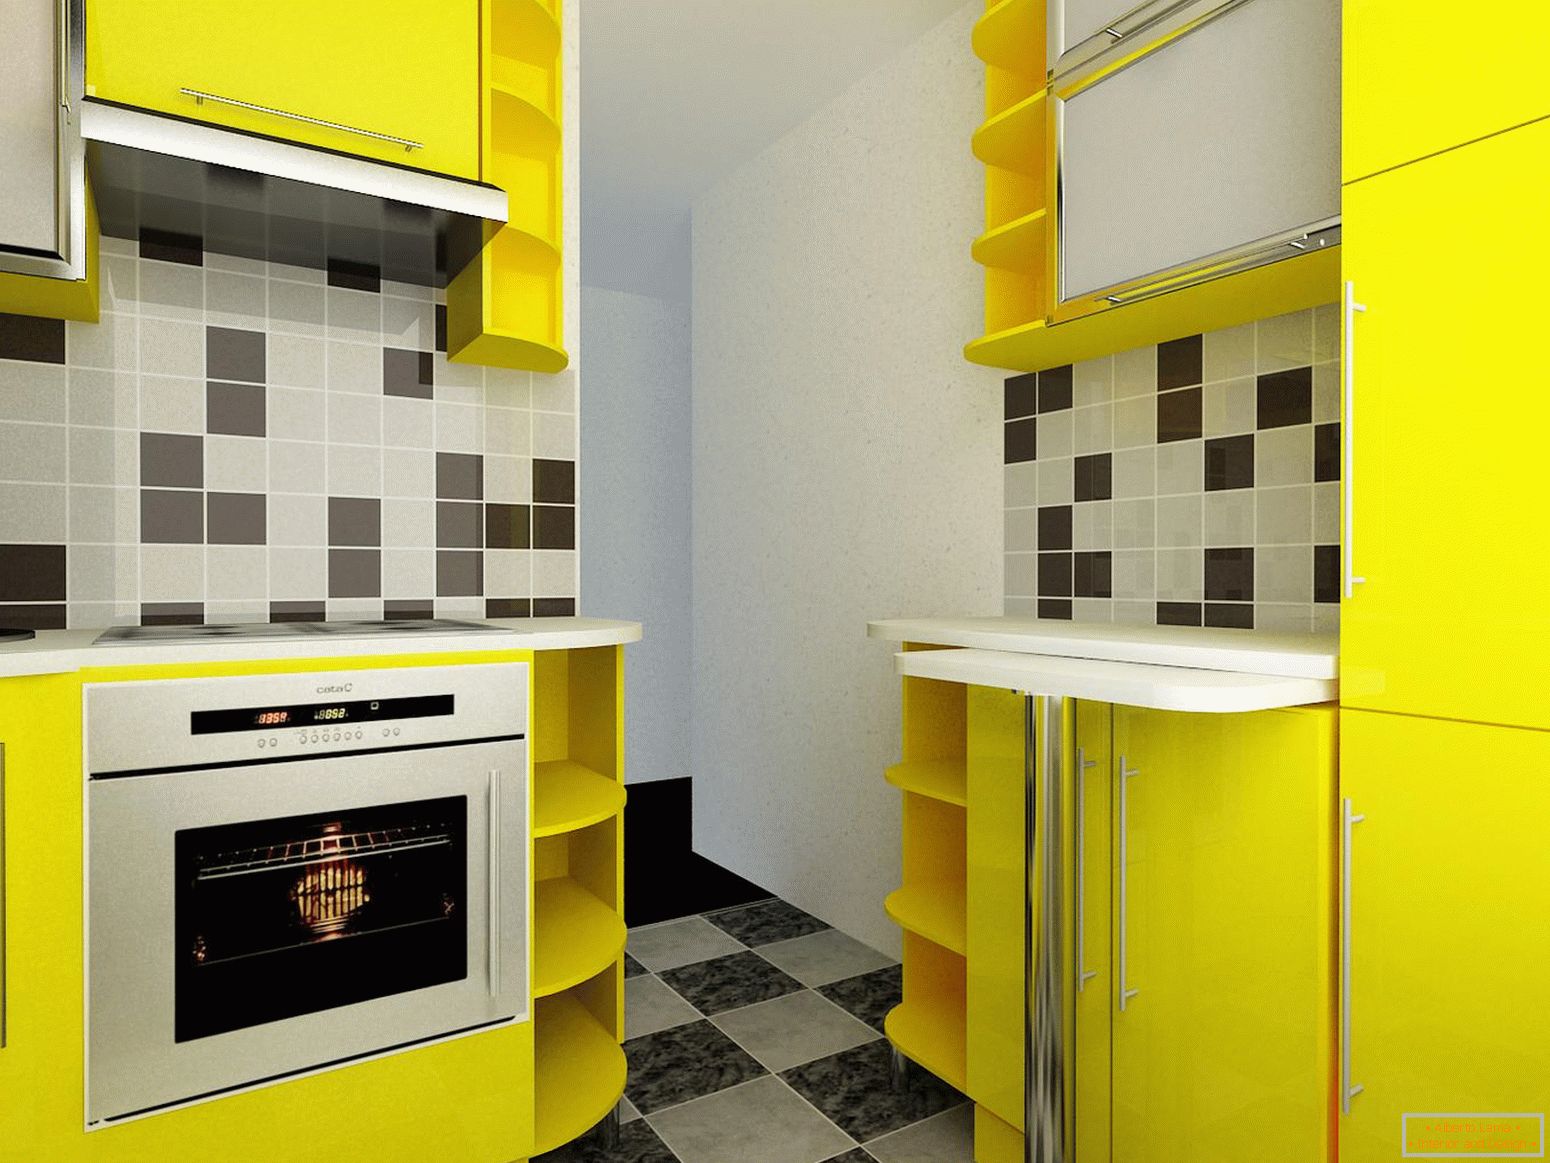 Mała kuchnia w żółtym kolorze